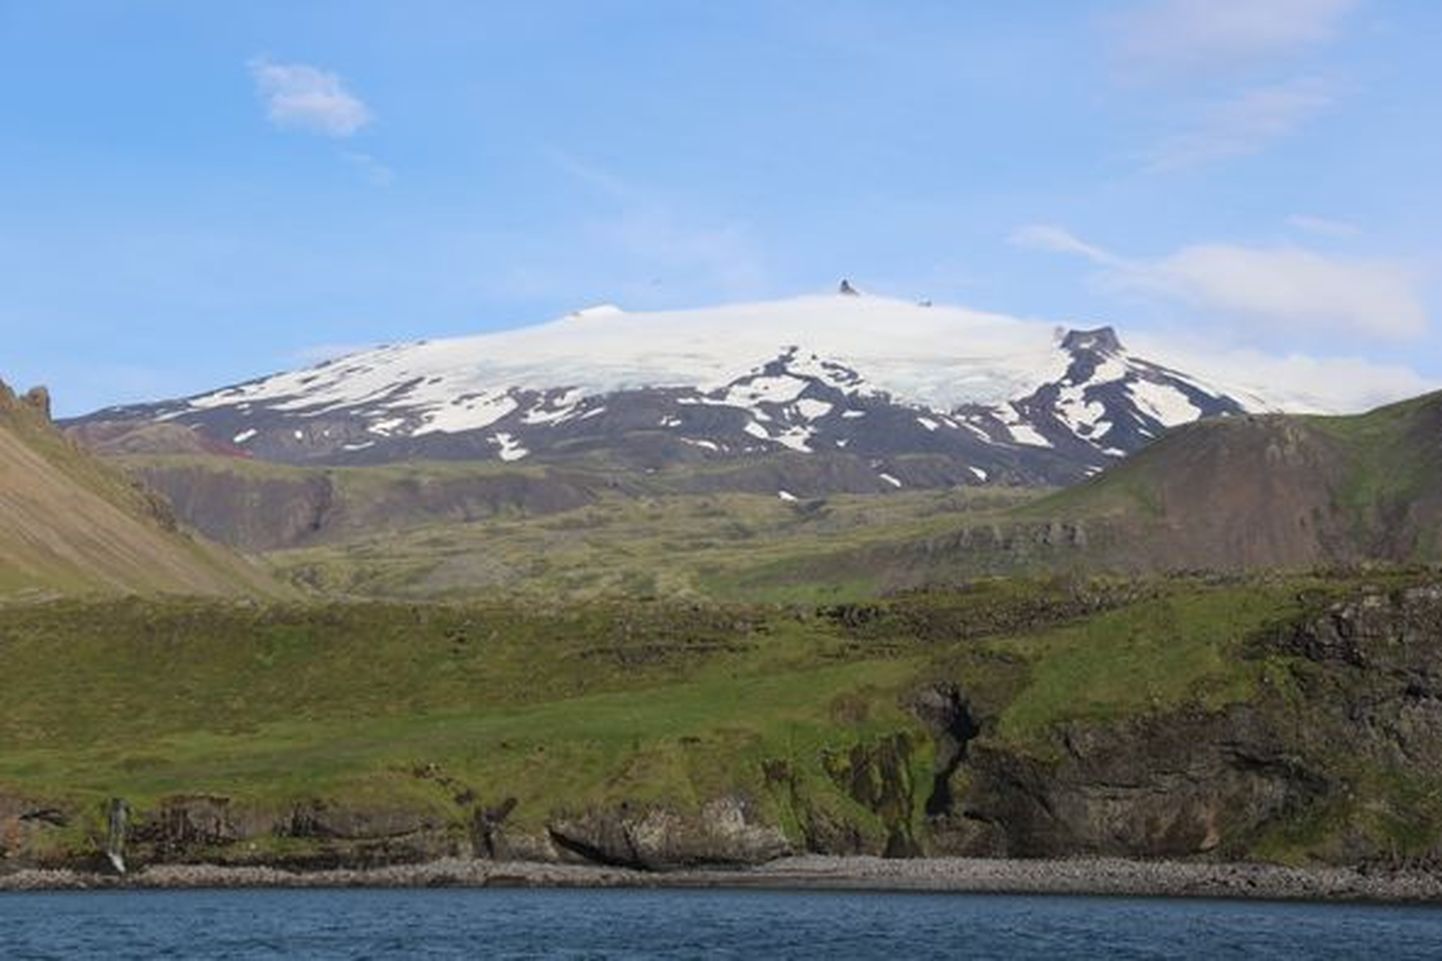 Viimane vaade Islandile ekspeditsioonilaeva Admiral Bellingshausen pardalt enne teekonda Gröönimaale.